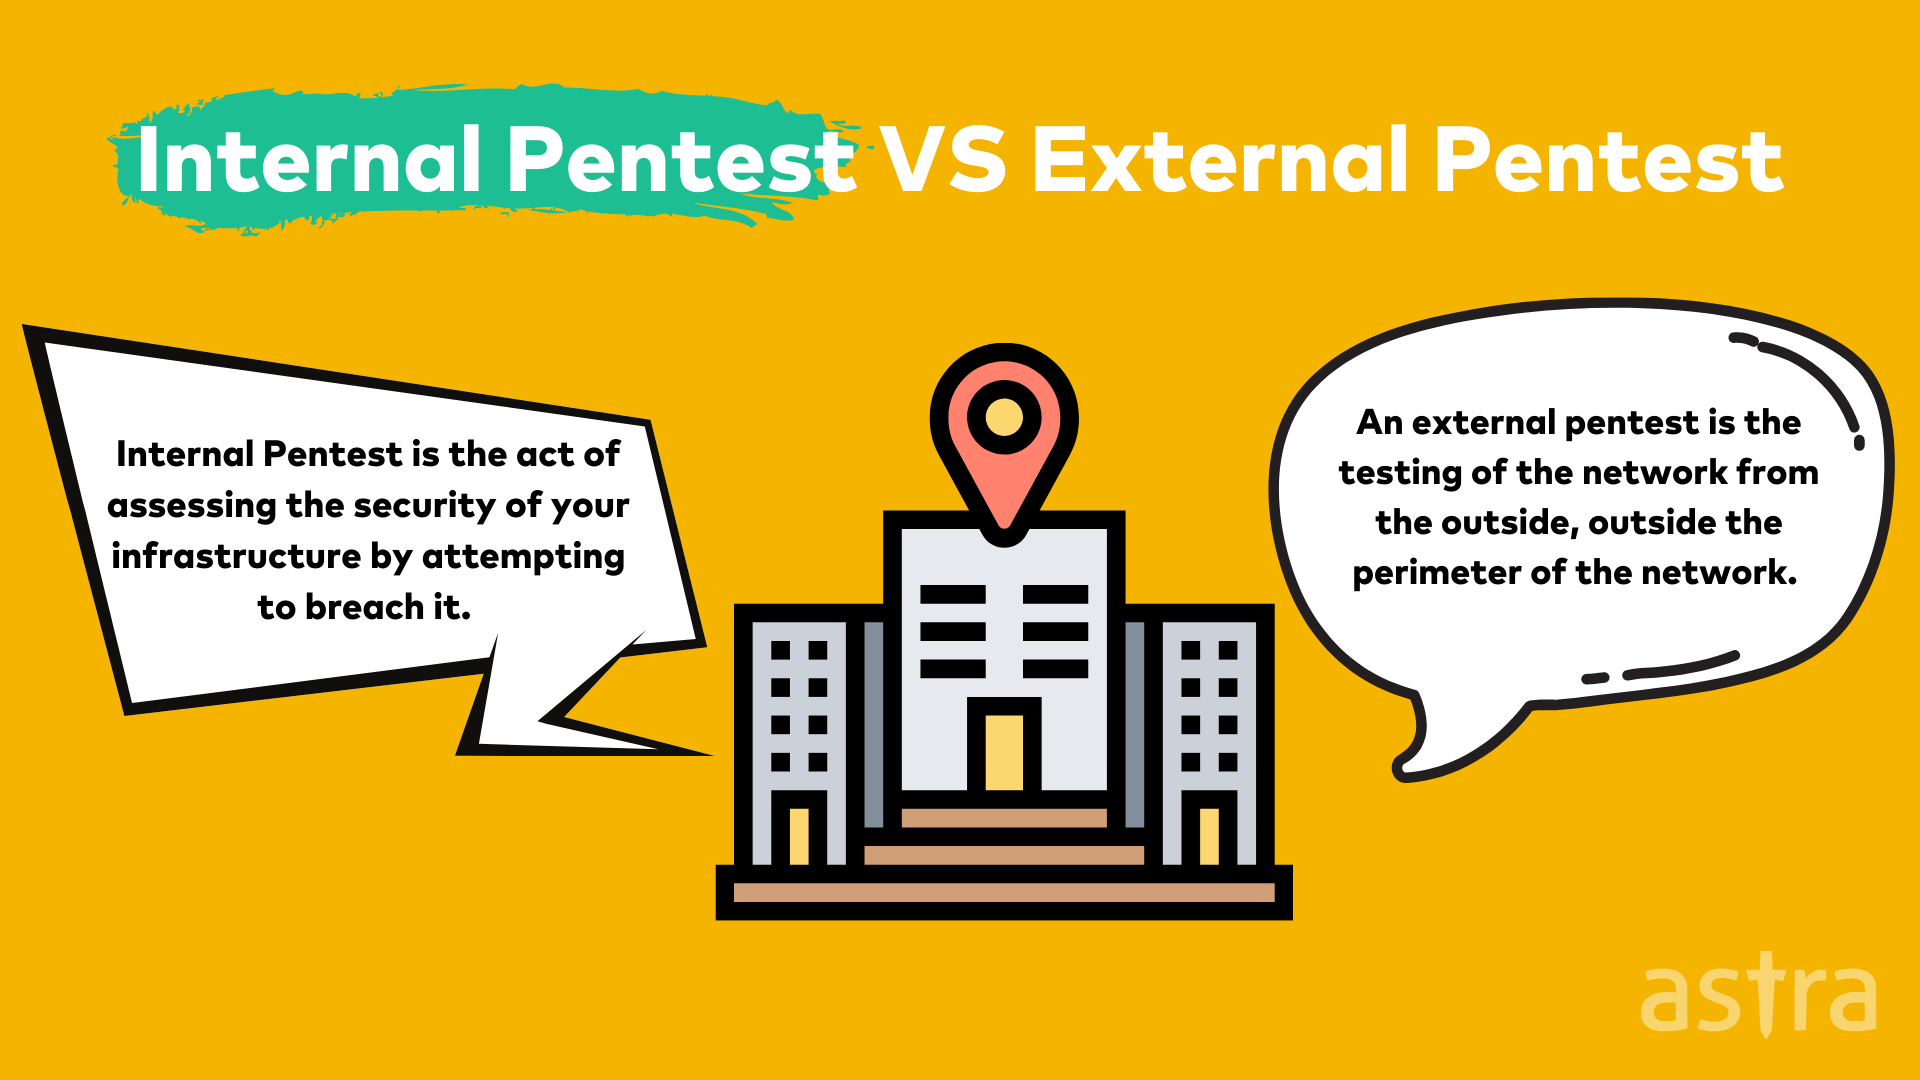 Internal Pentest VS External Pentest